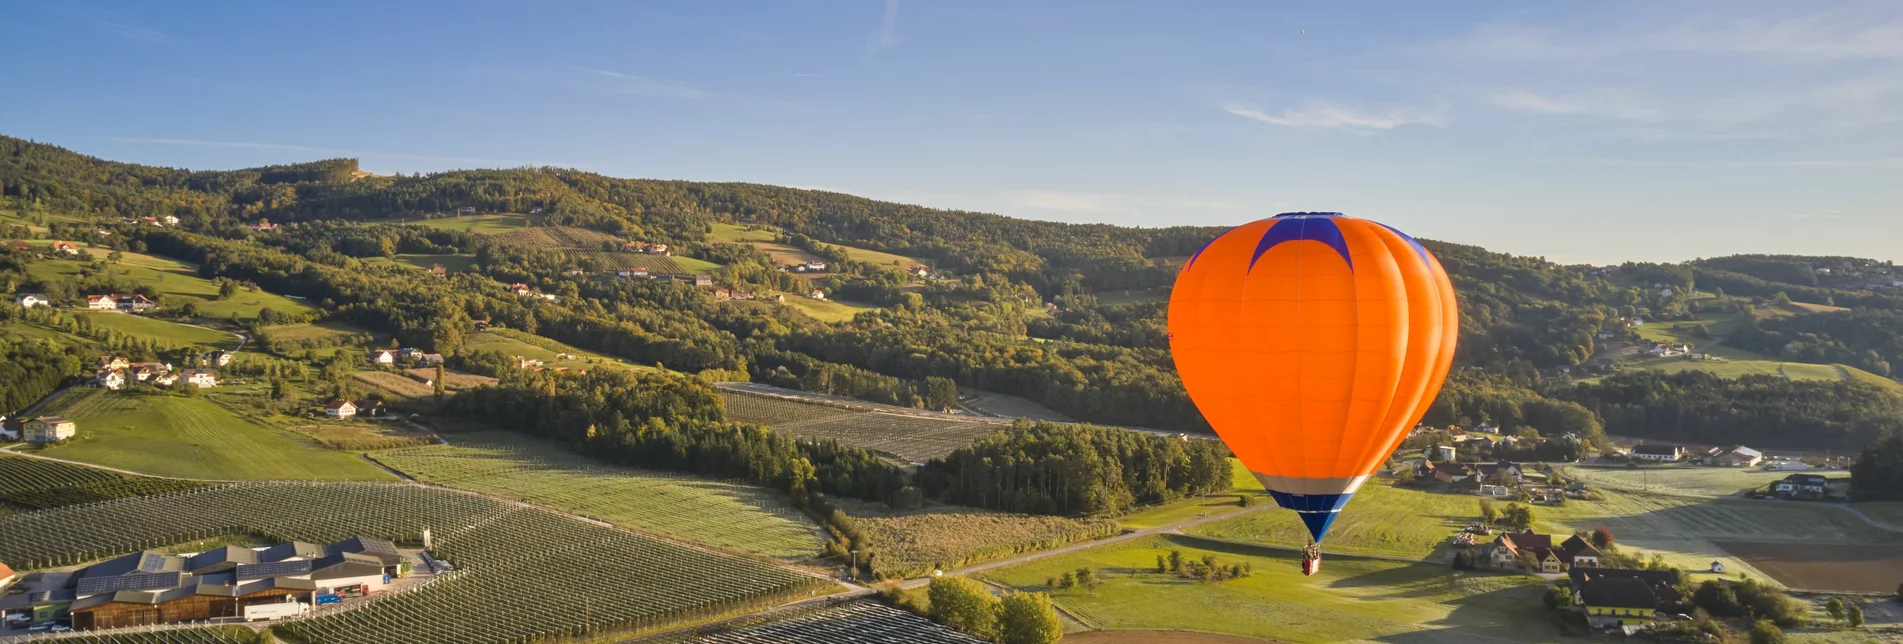 Heißluftballone in Stubenberg in der Oststeiermark | © Oststeiermark Tourismus | Lang-Bichl - RKP